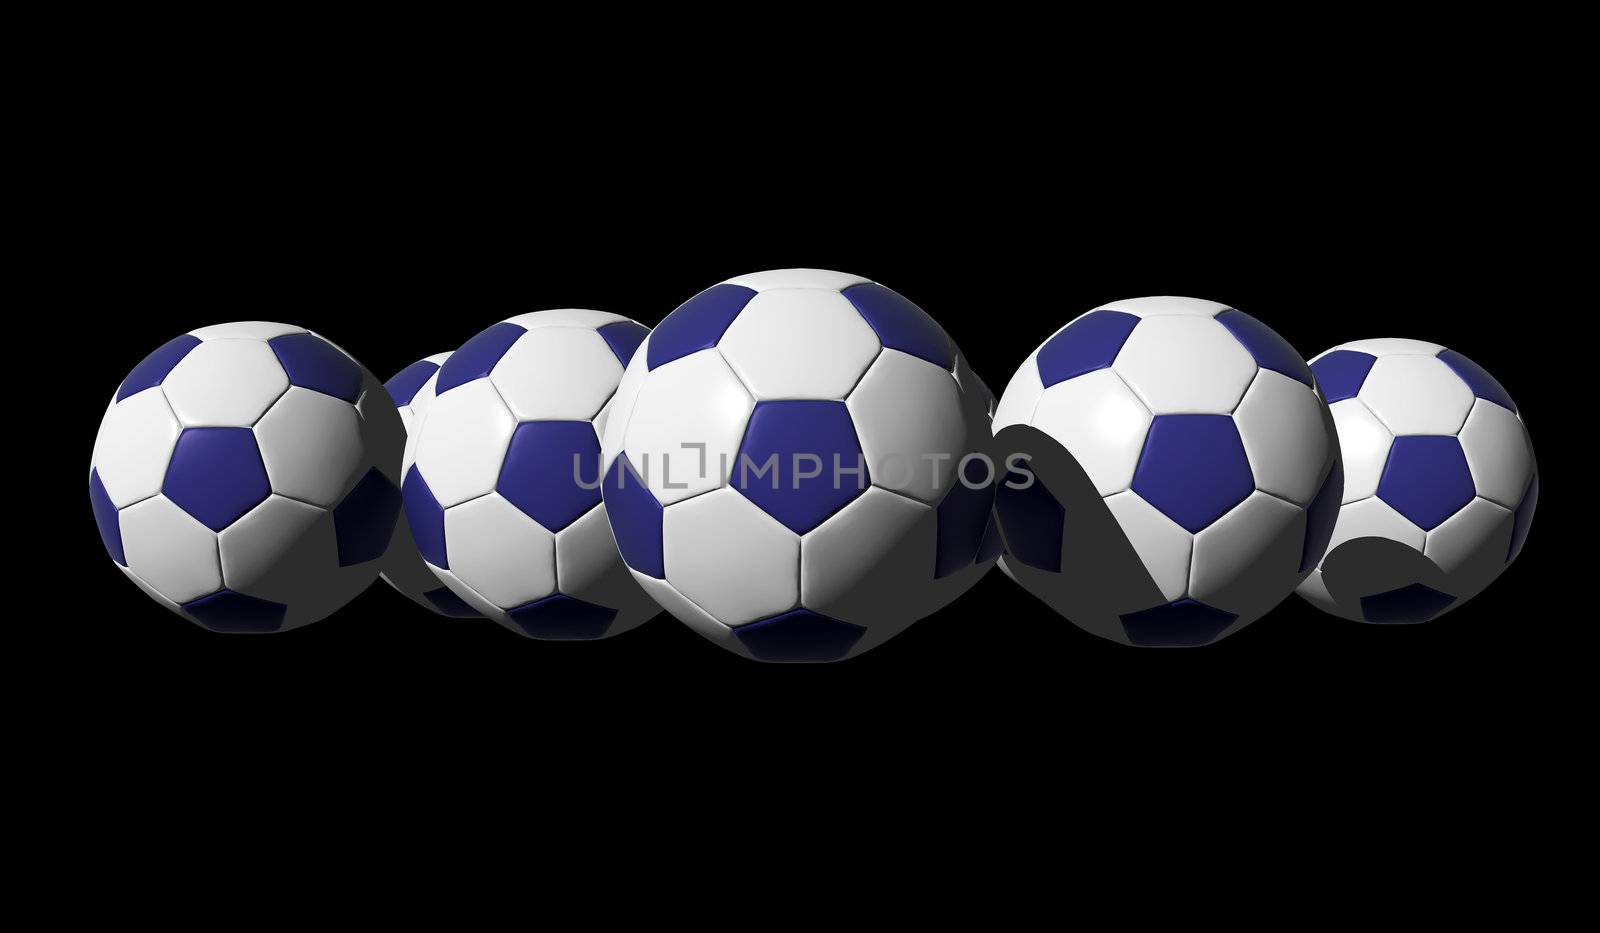 3D rendered blue soccer balls on black background